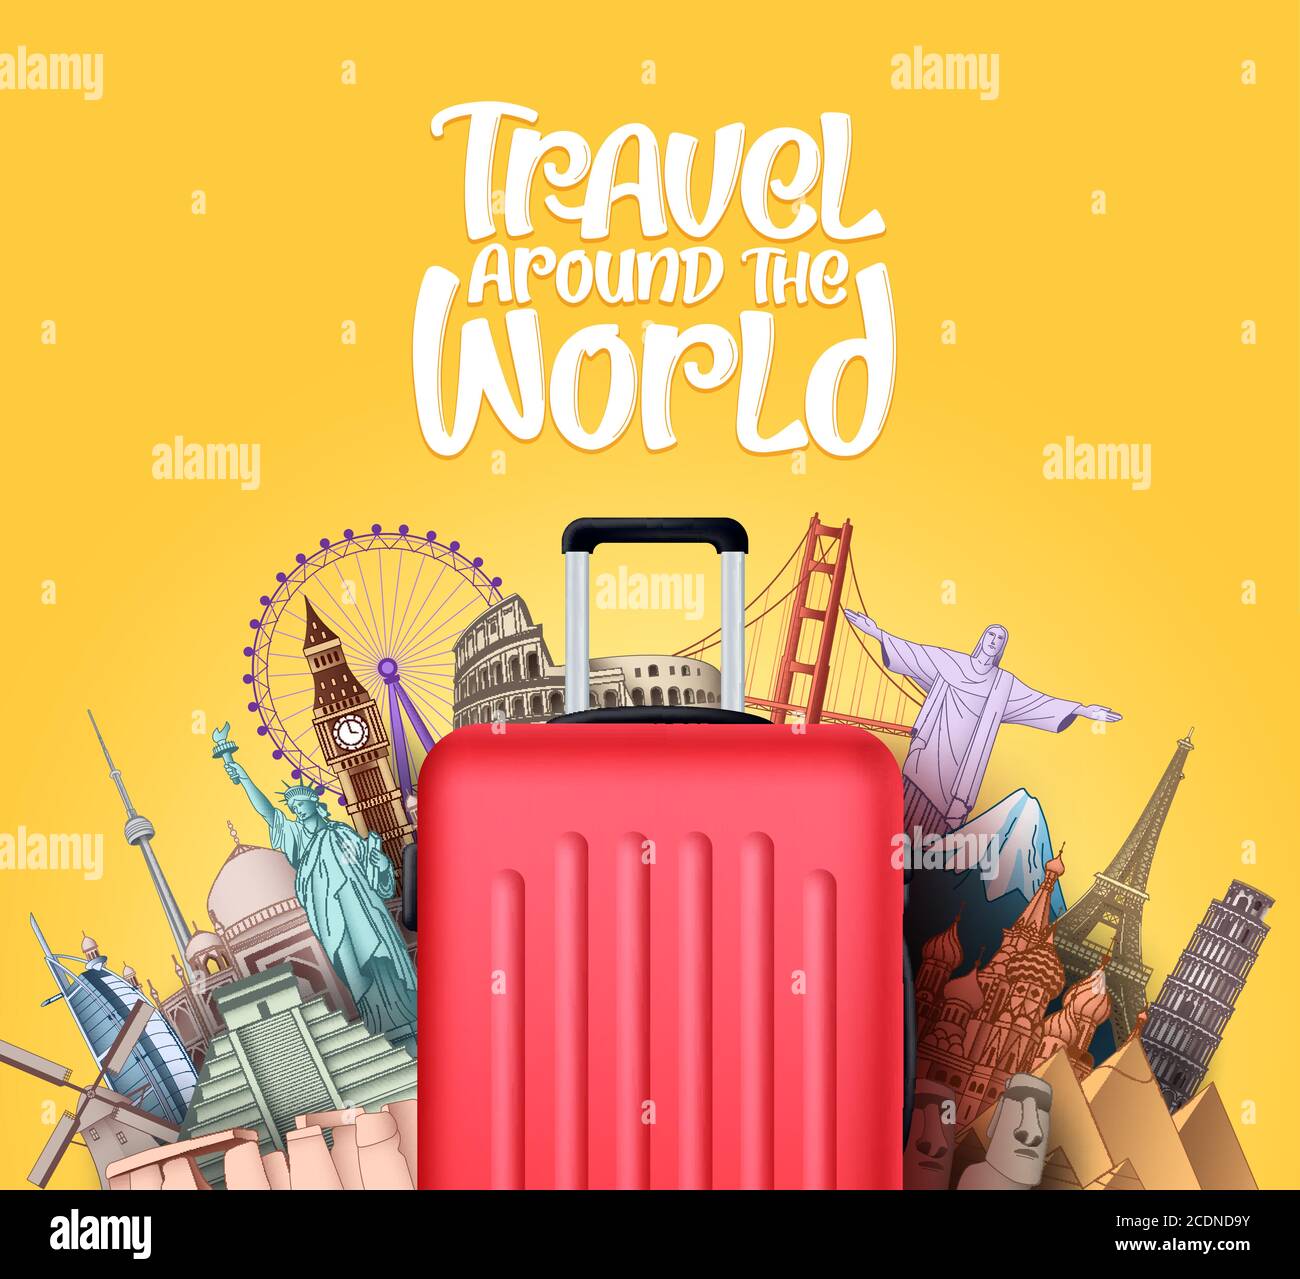 Reisen Sie um die Welt Vektor-Design. Reisen Sie in berühmten touristischen Wahrzeichen und um die Welt Attraktionen Elemente mit Gepäck Reisetasche Stock Vektor